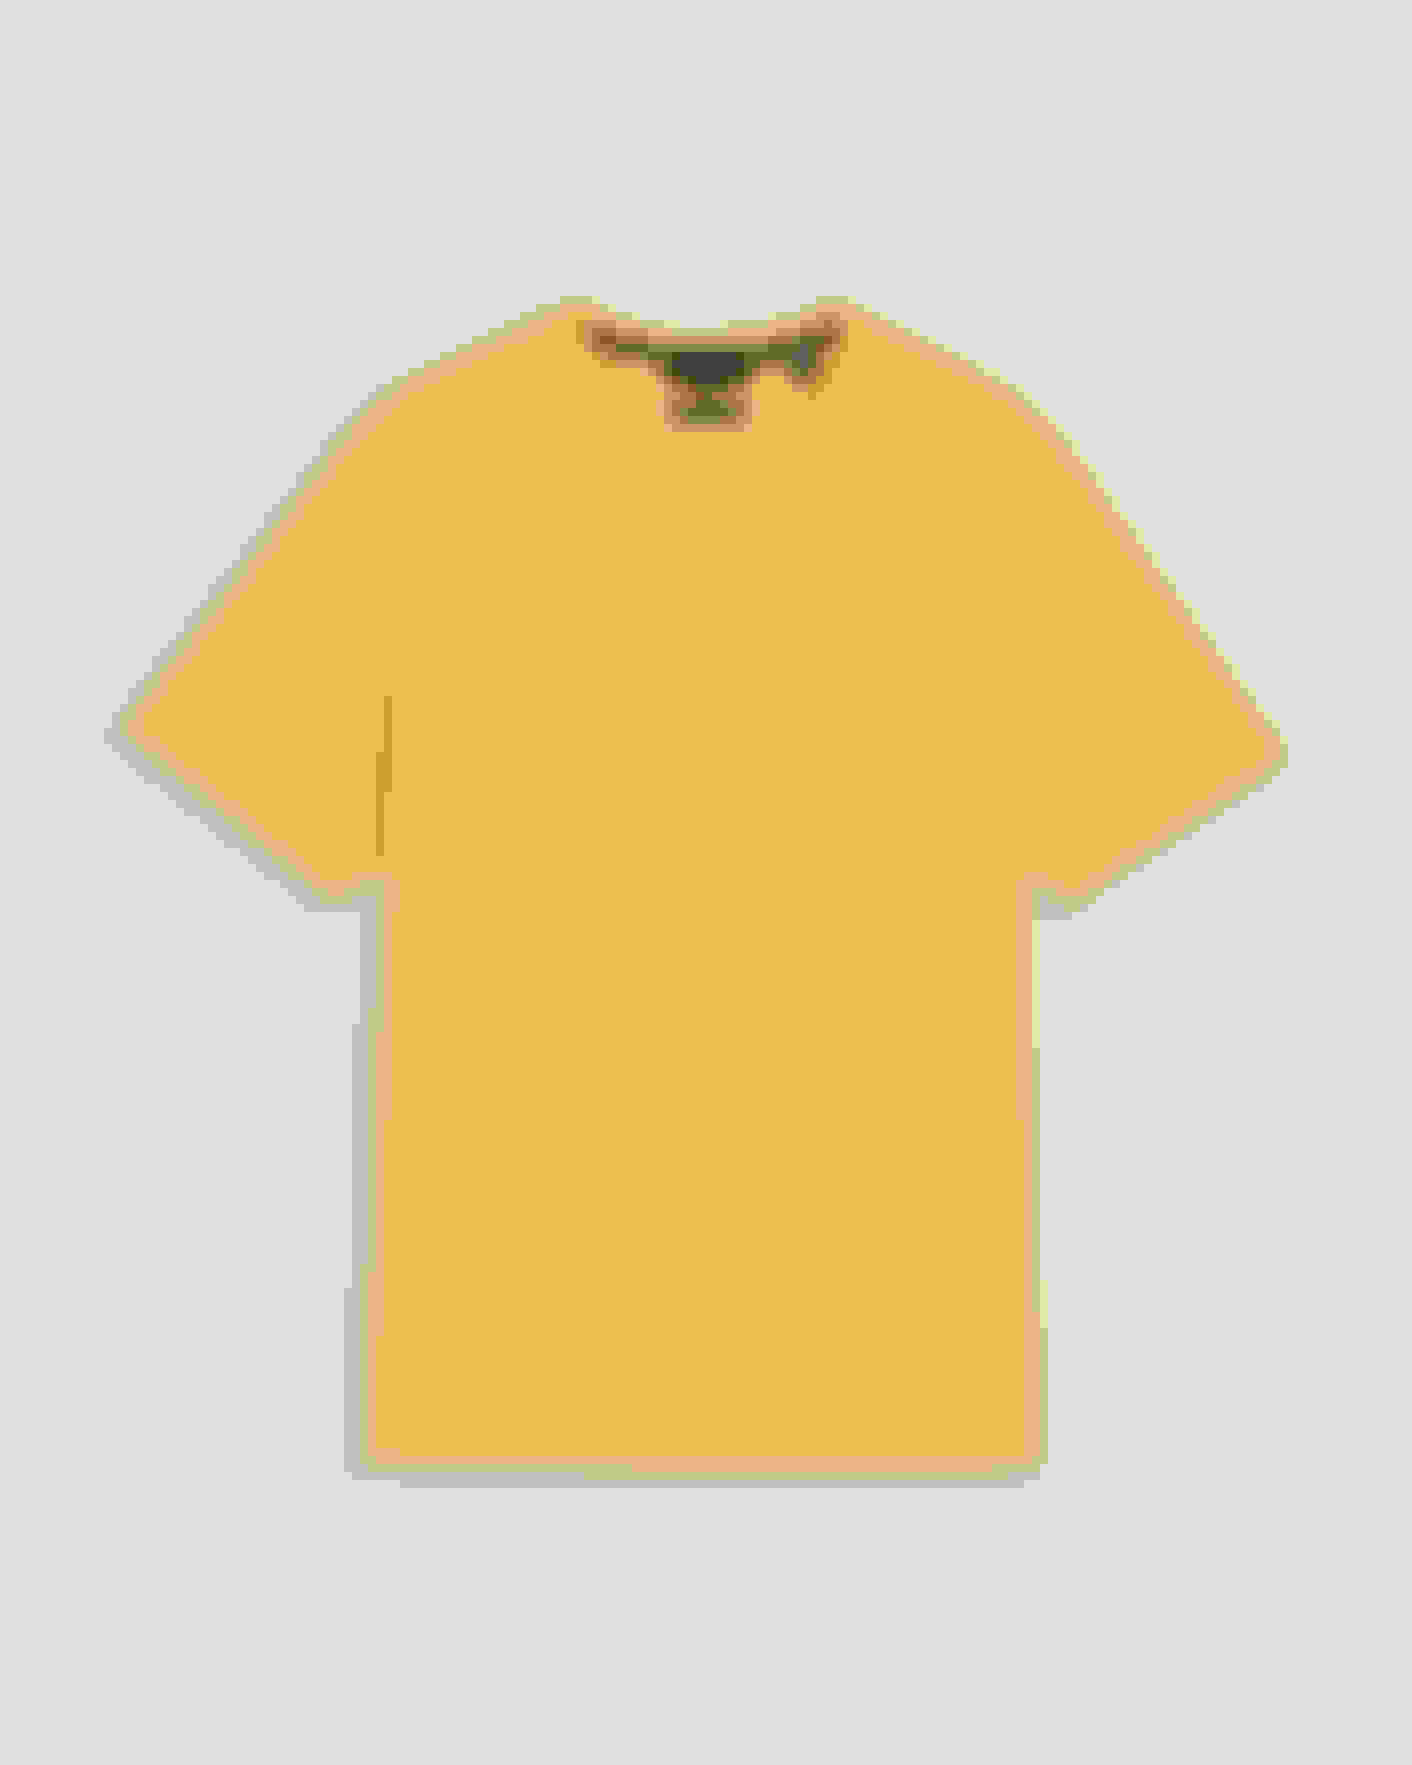 Golden Yellow Plain T-Shirt